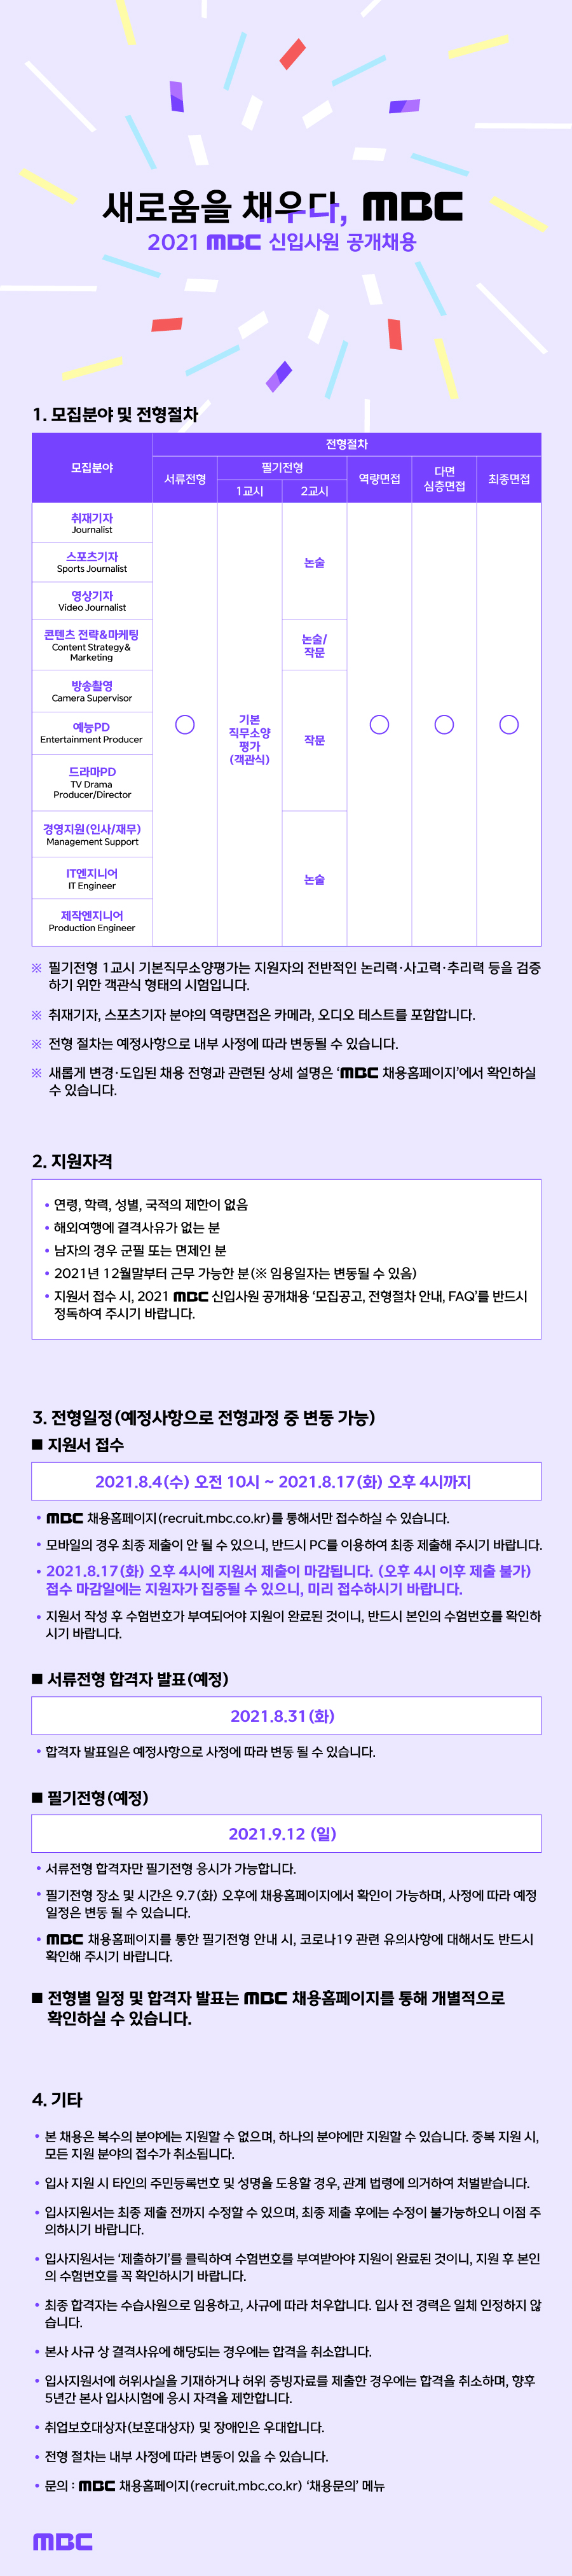 [MBC] 신입사원 공개채용 (경영지원, 엔지니어, 기자, PD )